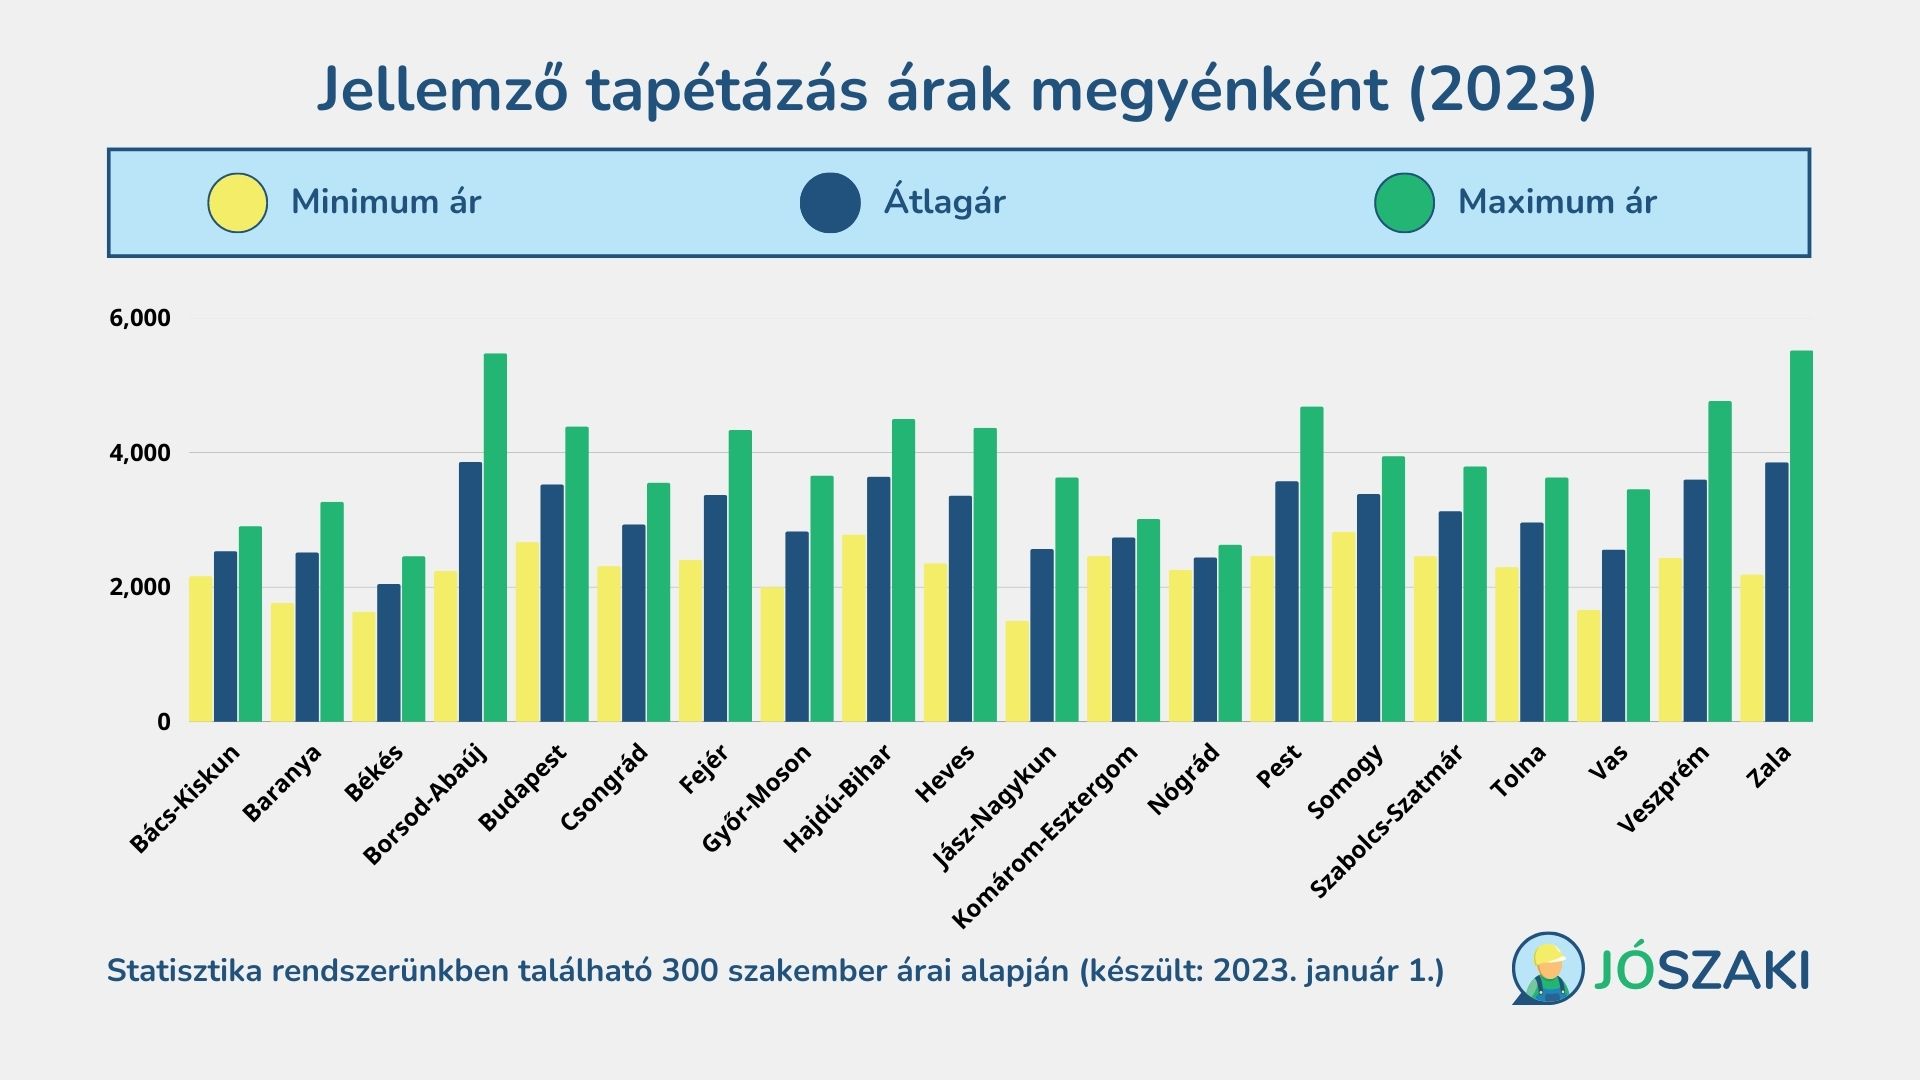 A tapétázás árának átlagai 2023 januárjában Magyarországon megyénként